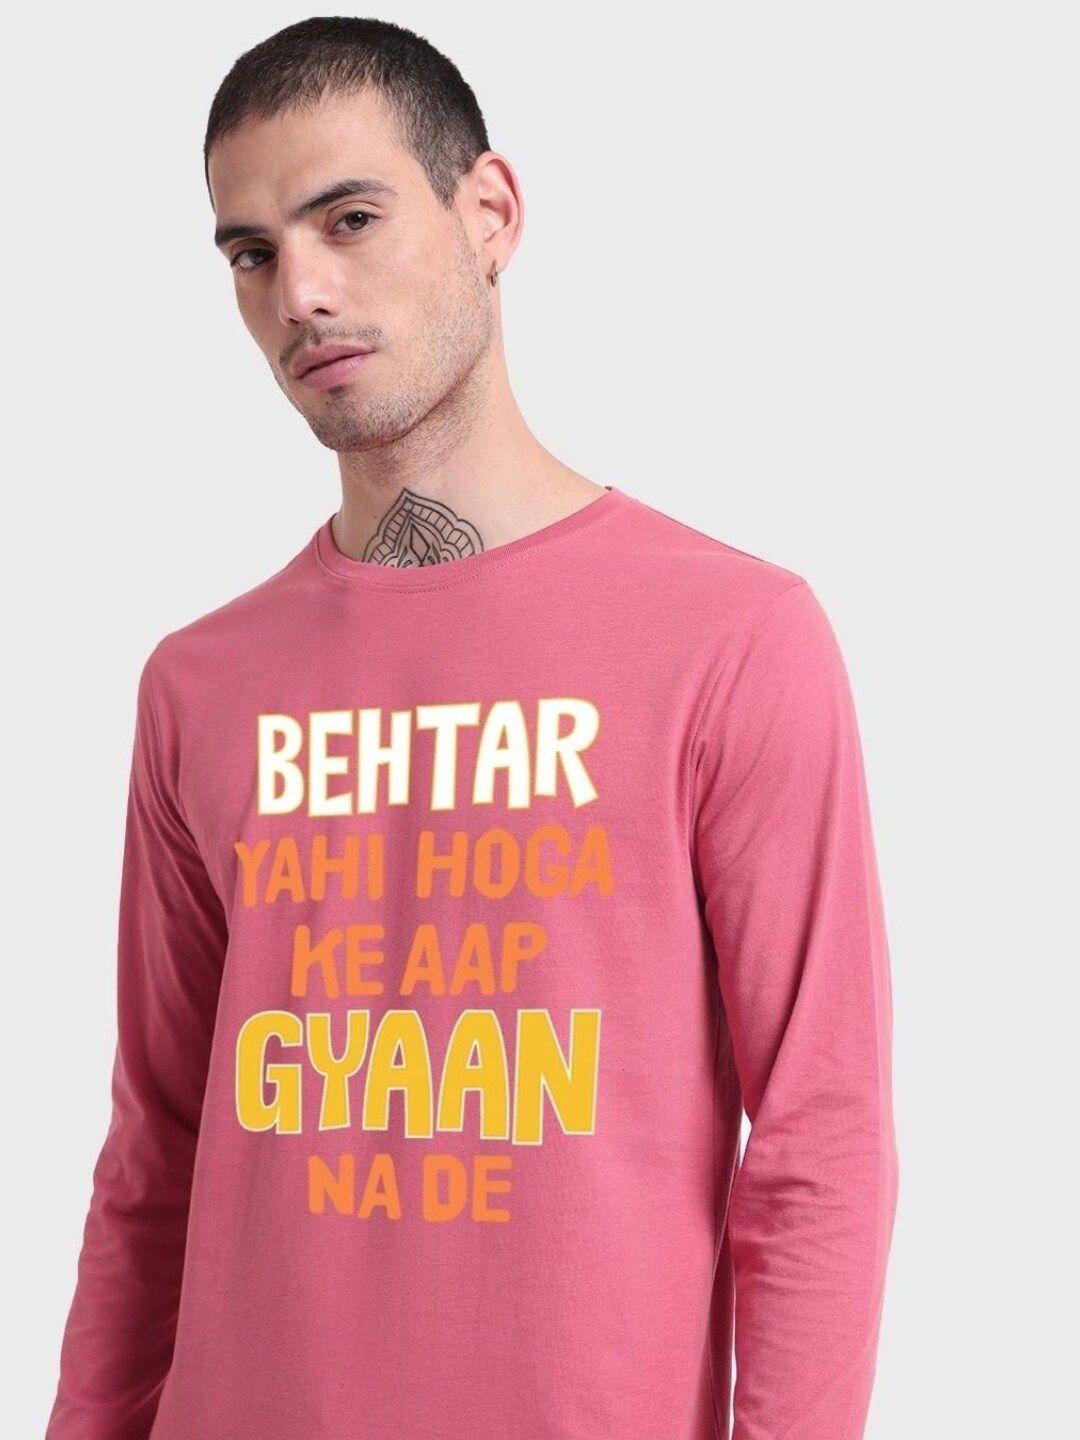 bewakoof typography printed cotton t-shirt